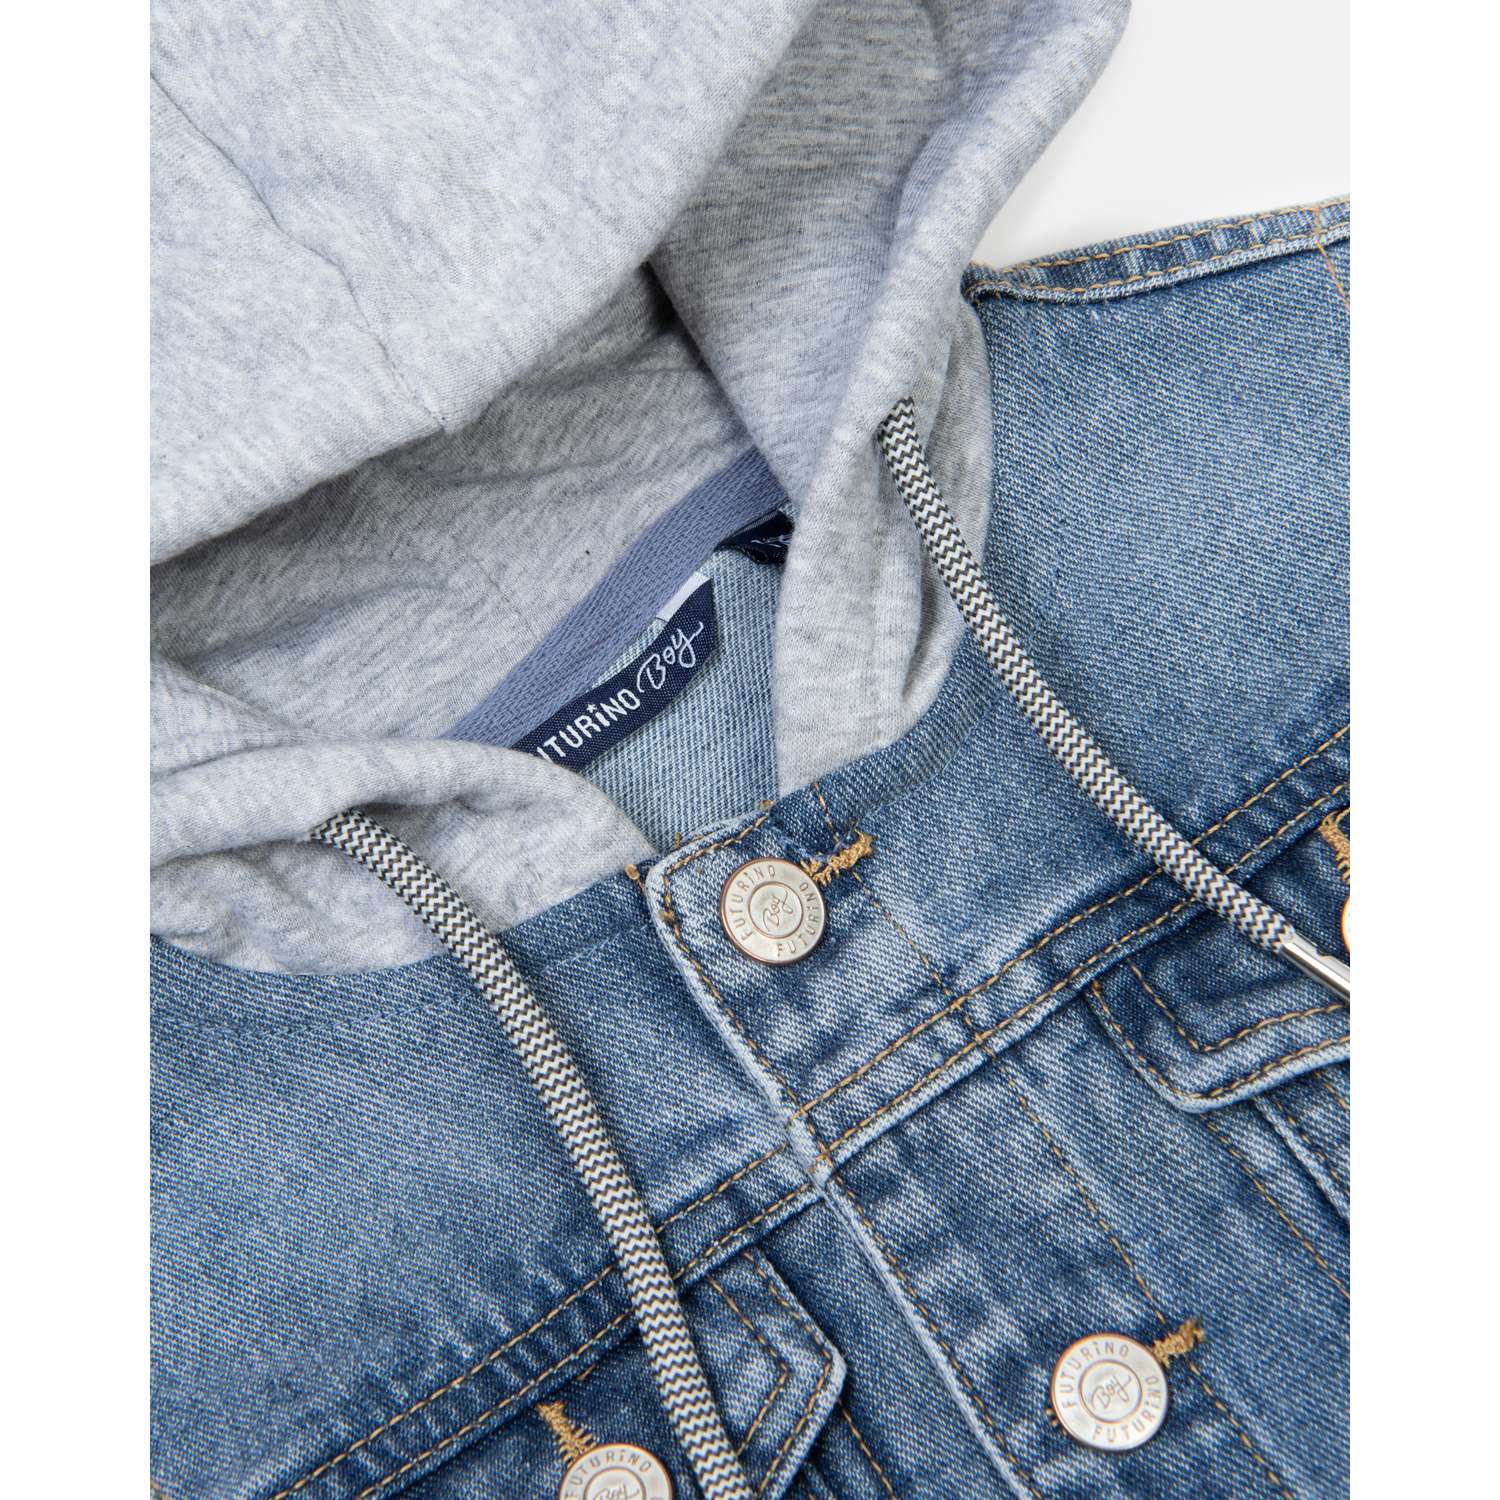 Куртка джинсовая Futurino S22FU5-B117-1kb-66 - фото 4